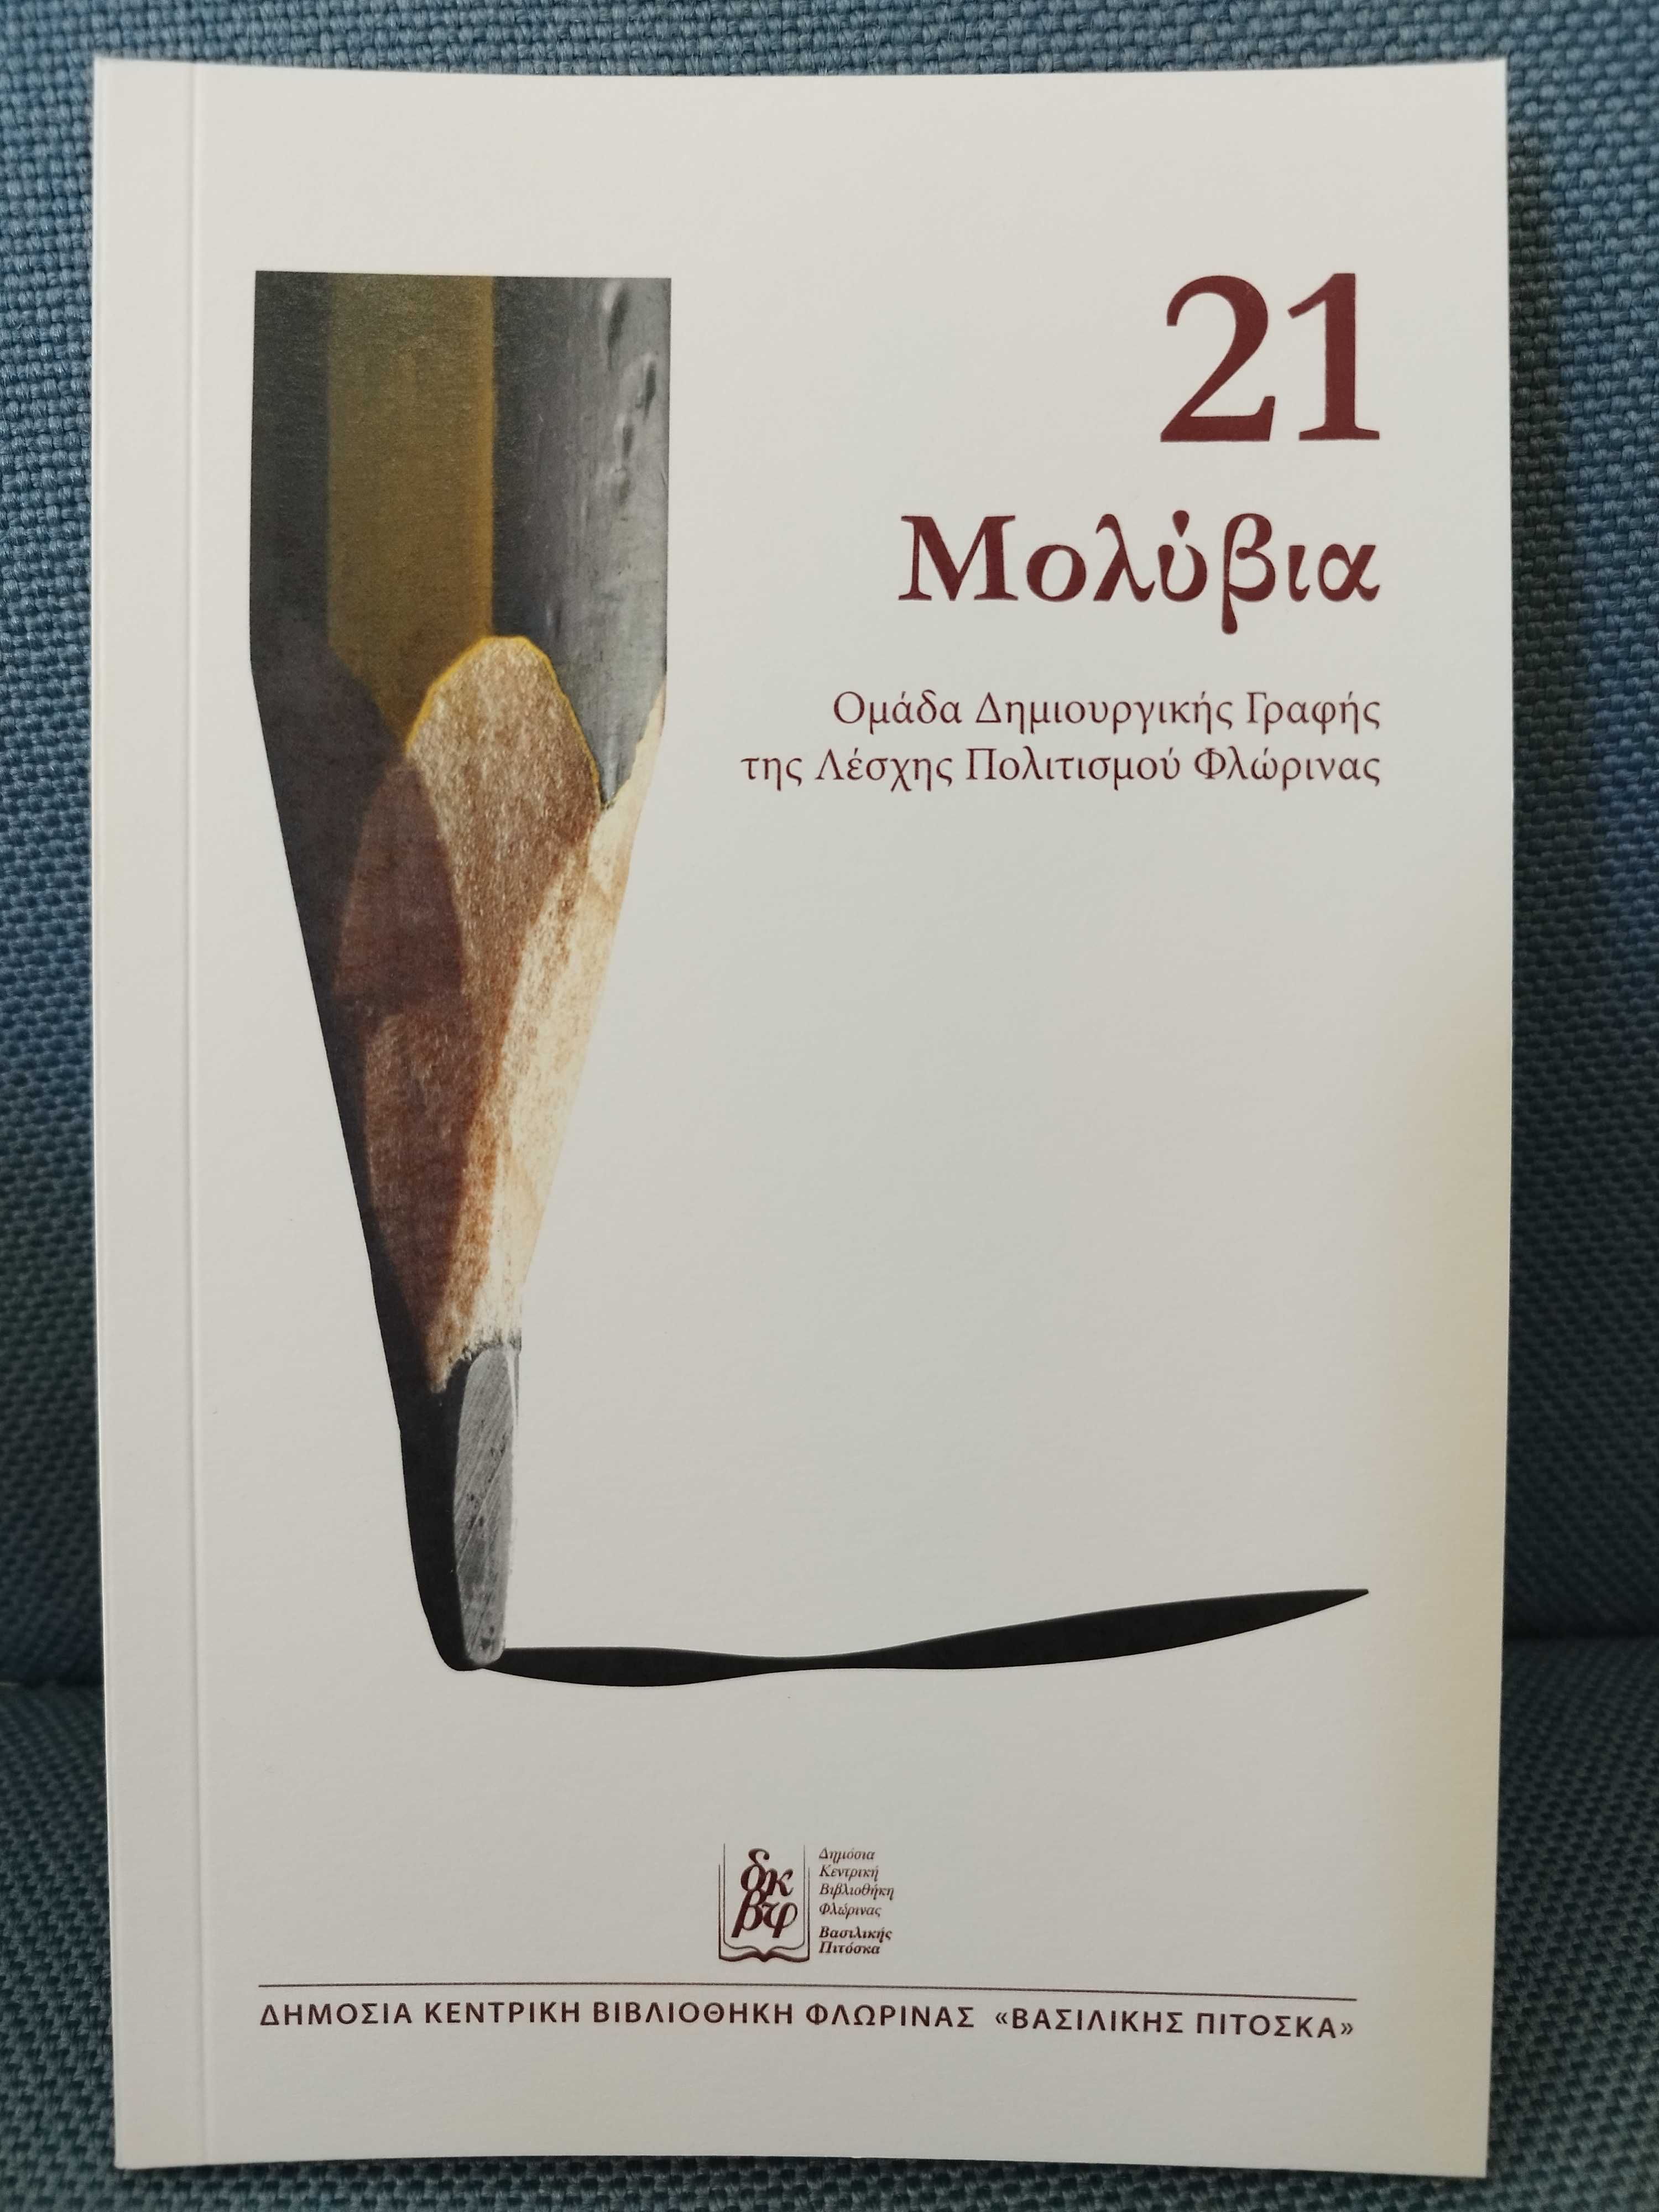 Το εξώφυλλο του βιβλίου "21 Μολύβια"